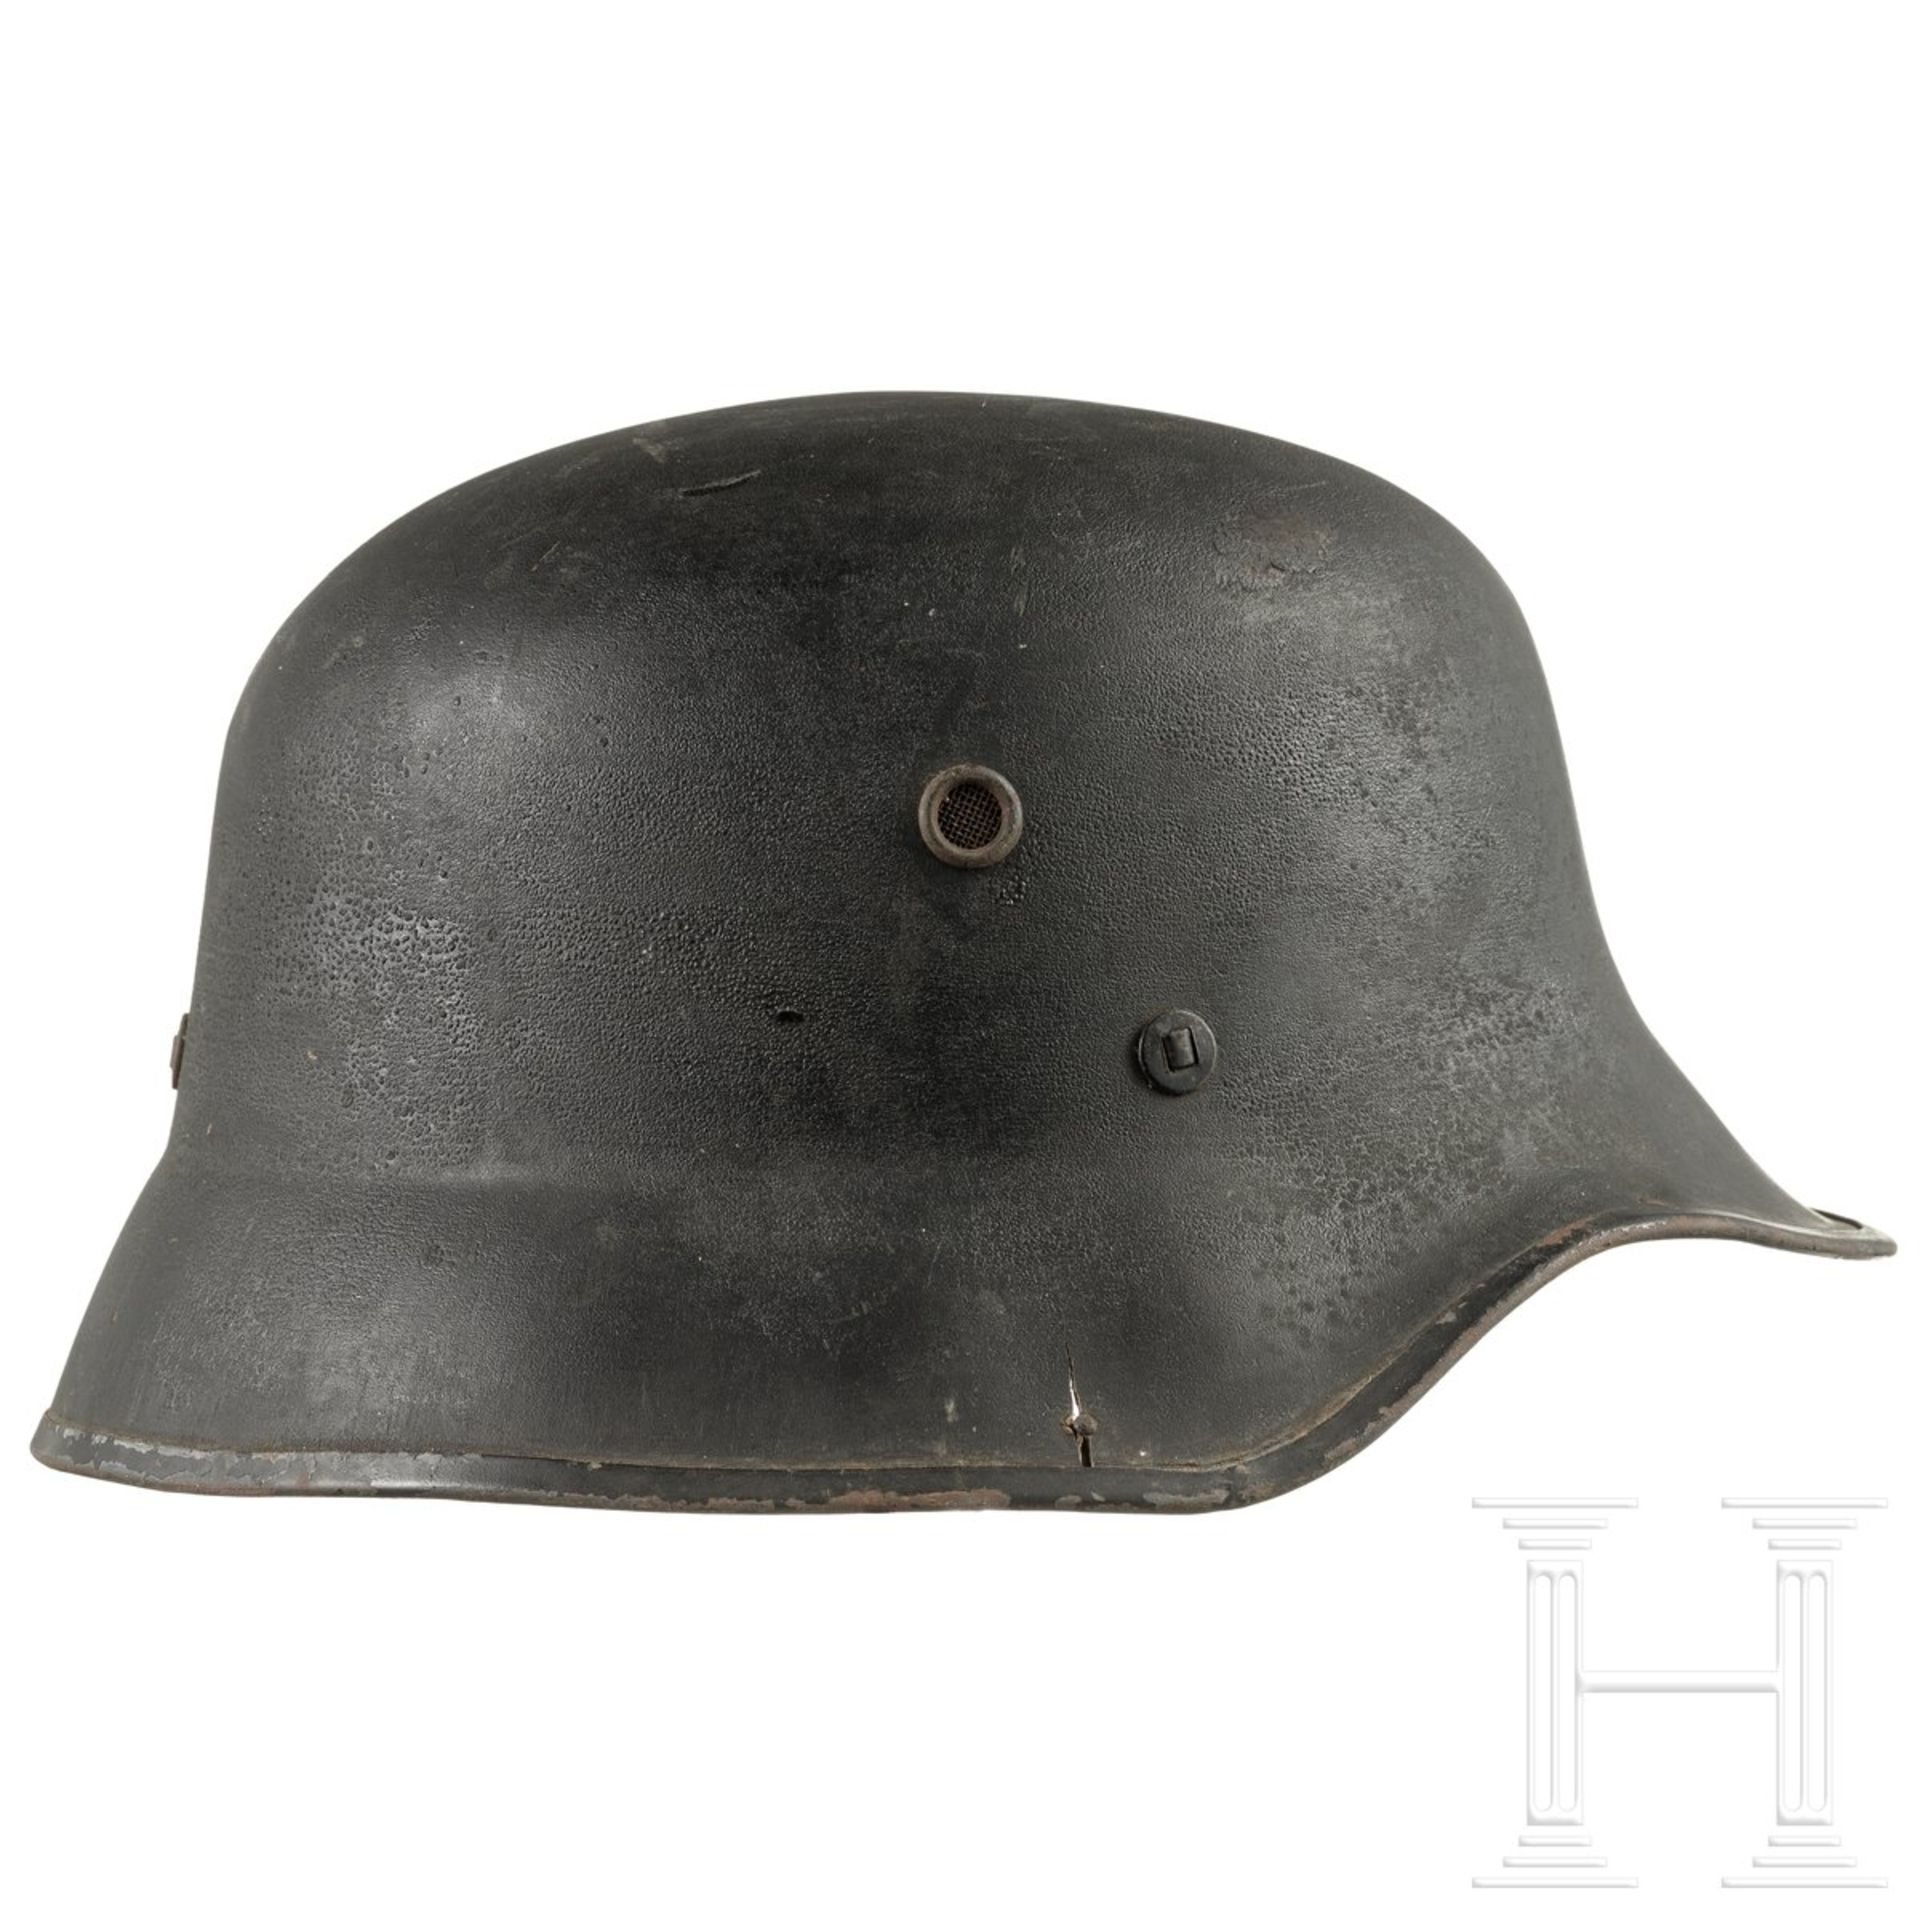 Leichter Helm ähnlich M 35, Deutsches Reich oder DDR, 1940er Jahre - Bild 2 aus 3